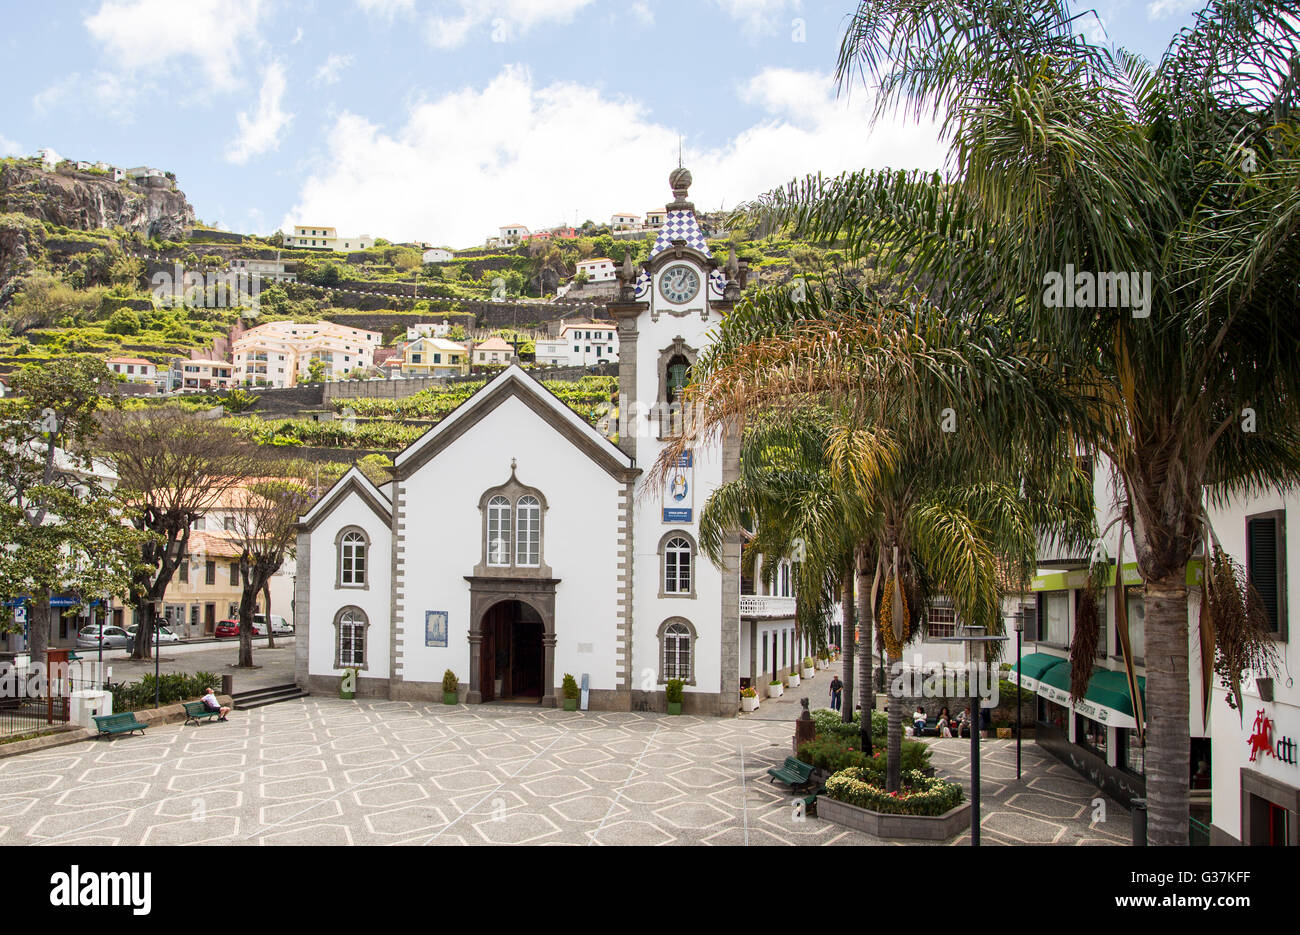 De l'église Igreja de São Bento dans le petit village de Ribeira Brava, sur l'île de Madère avec ses petites rues pavées Banque D'Images